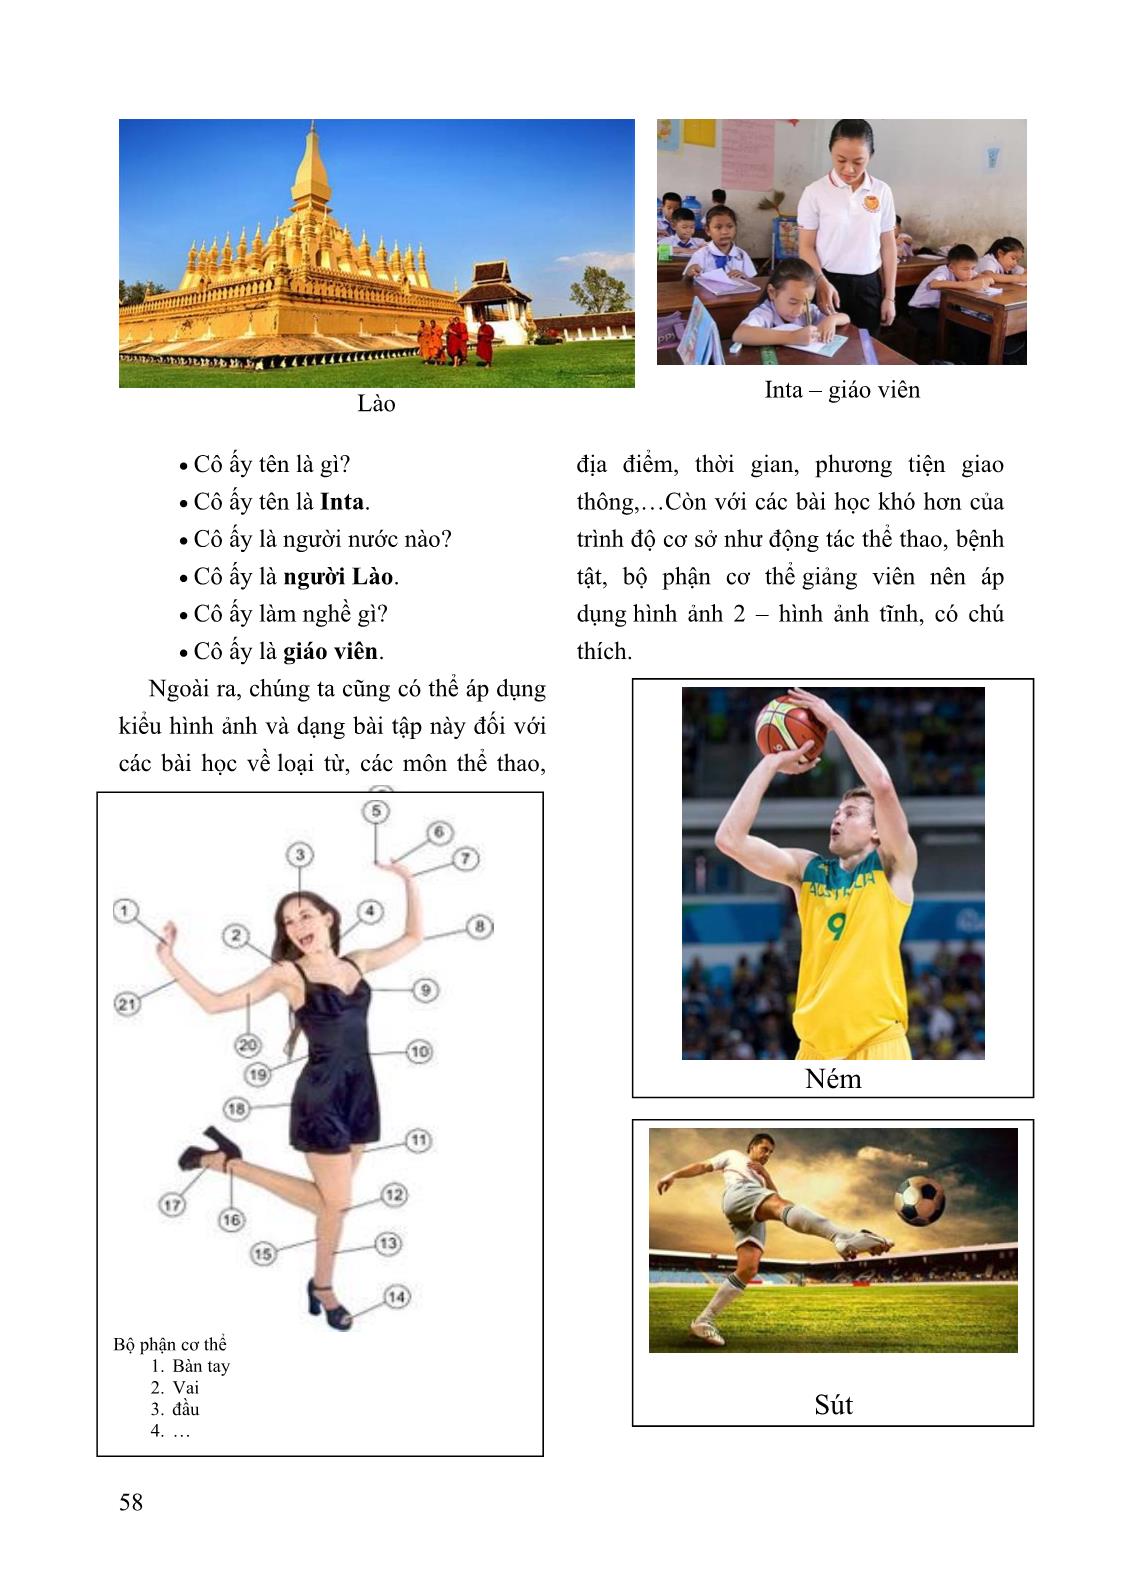 Áp dụng phương pháp dạy tiếng Việt bằng hình ảnh cho Lưu học sinh Lào tại trường Đại học Sư phạm Thể dục Thể thao Hà Nội (tiếng Việt trình độ cơ sở) trang 4